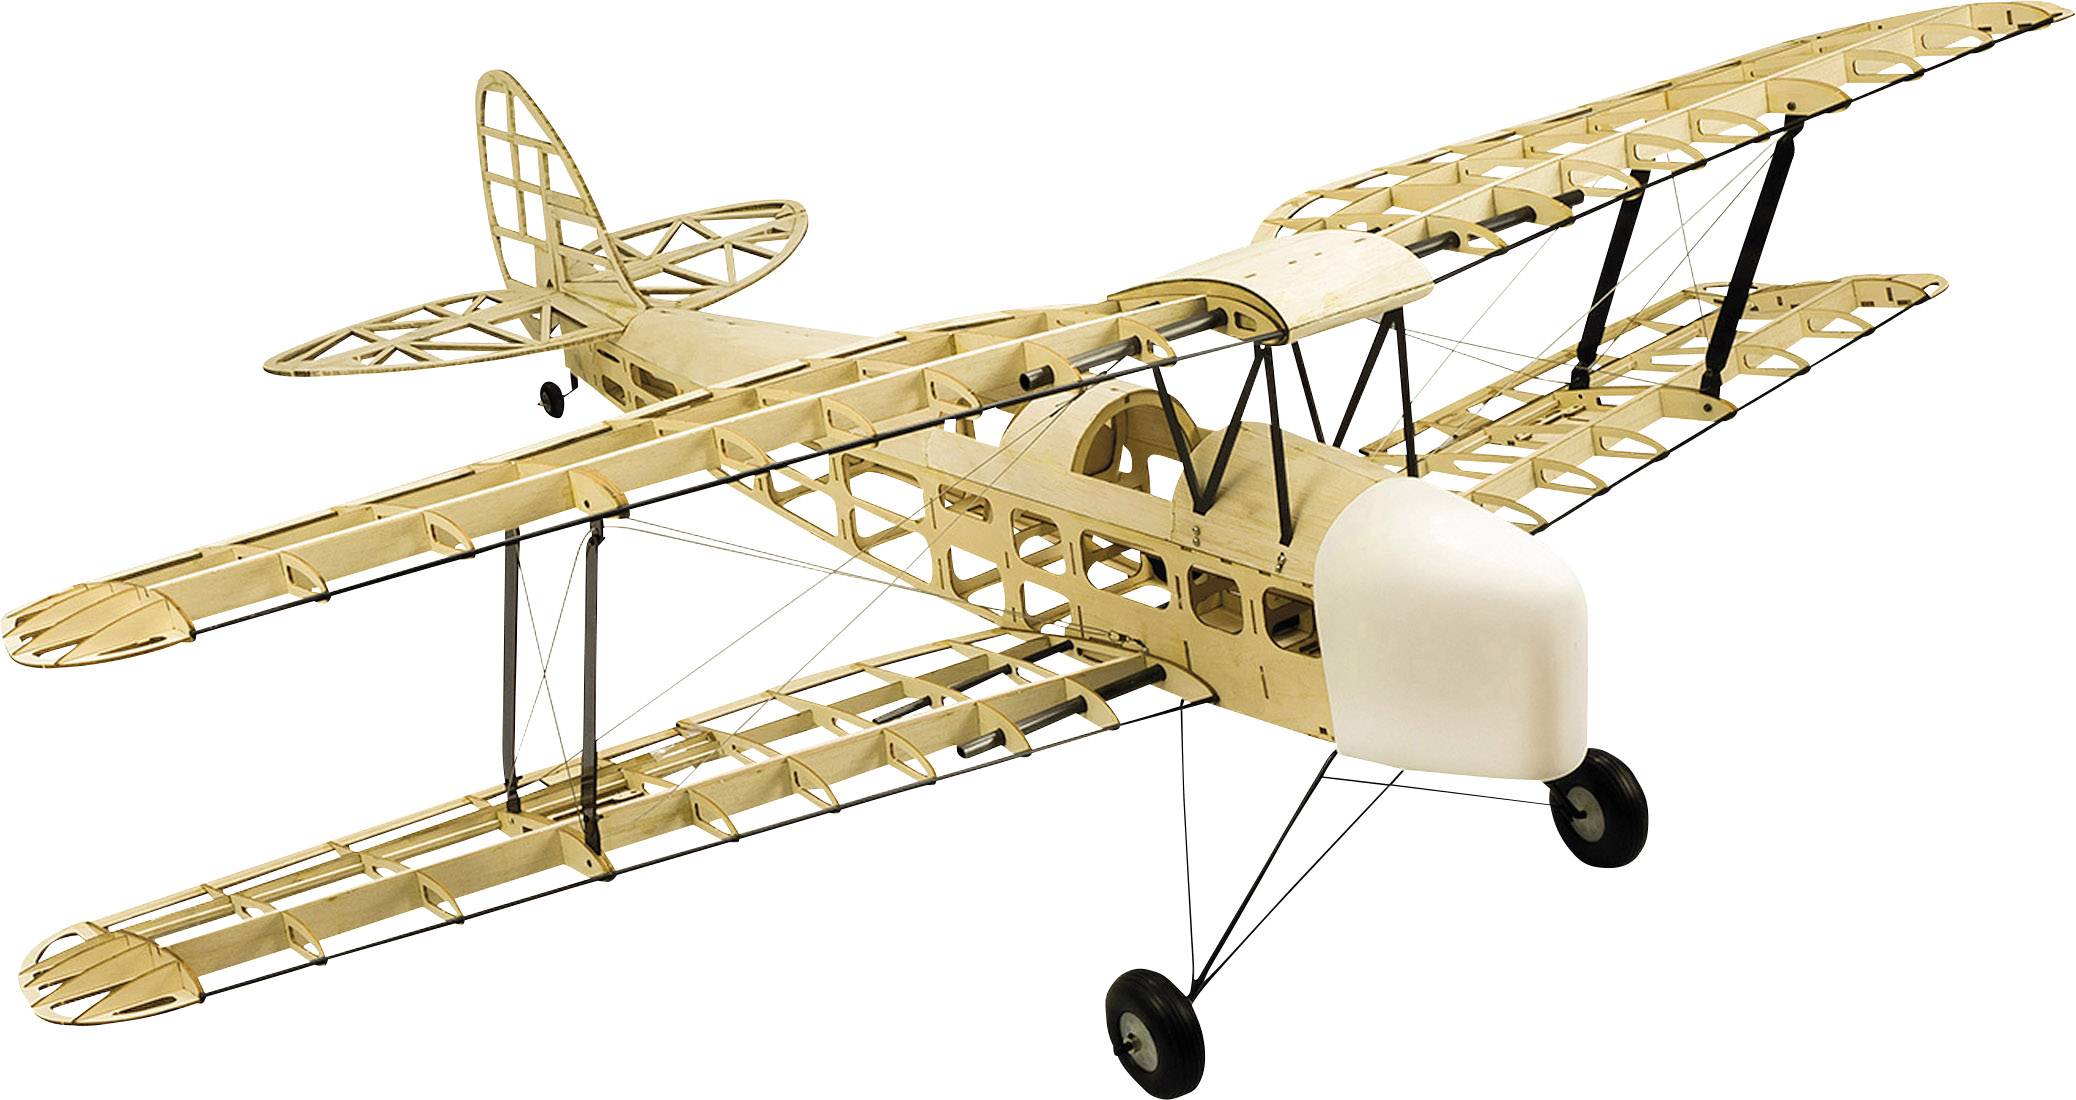 rc model airplane kits